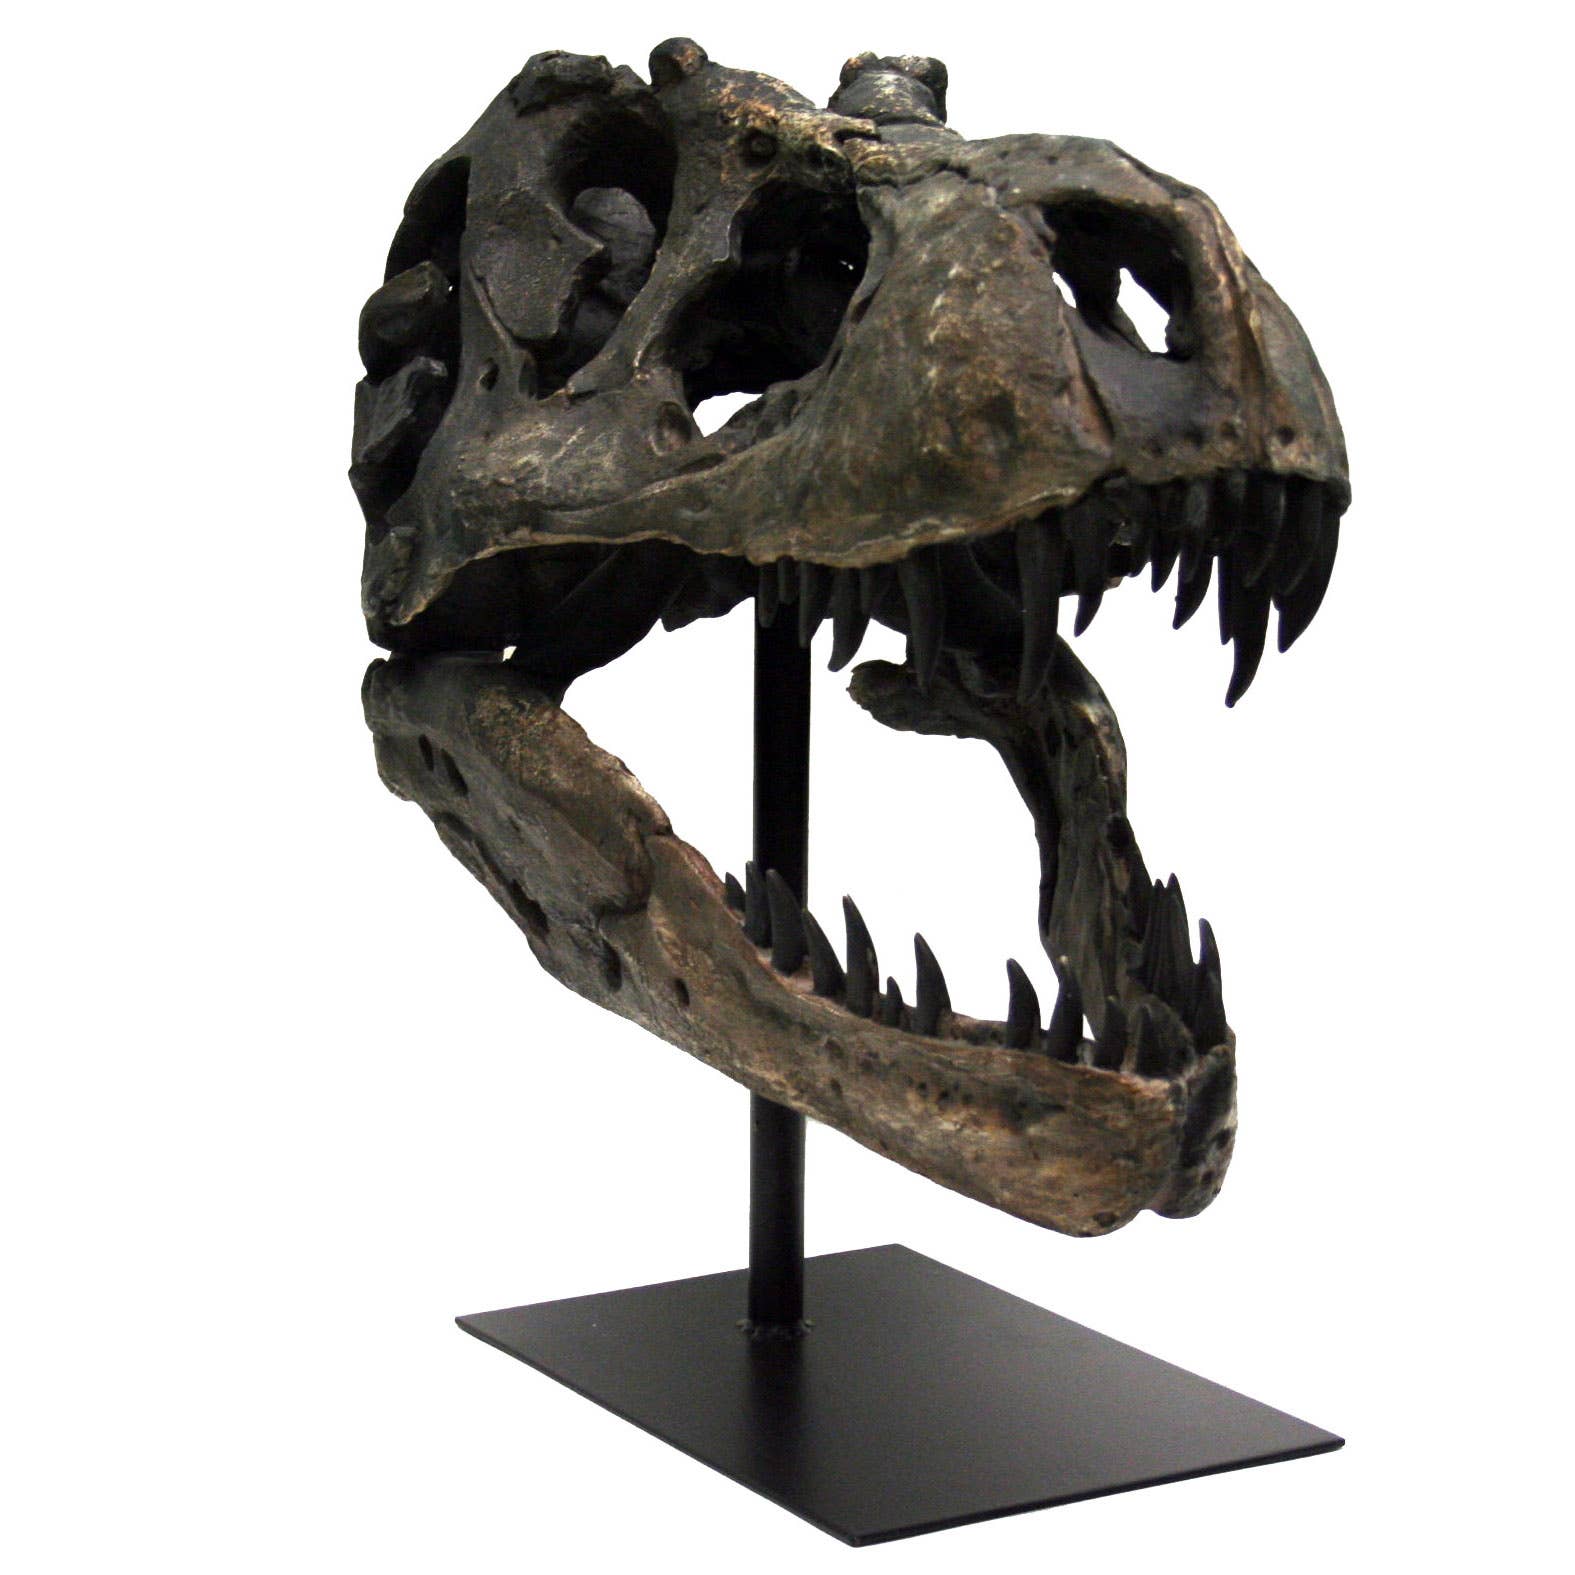 Replica T-Rex Tyrannosaurus Rex Dinosaur Large Fossil Skull - Stemcell Science Shop